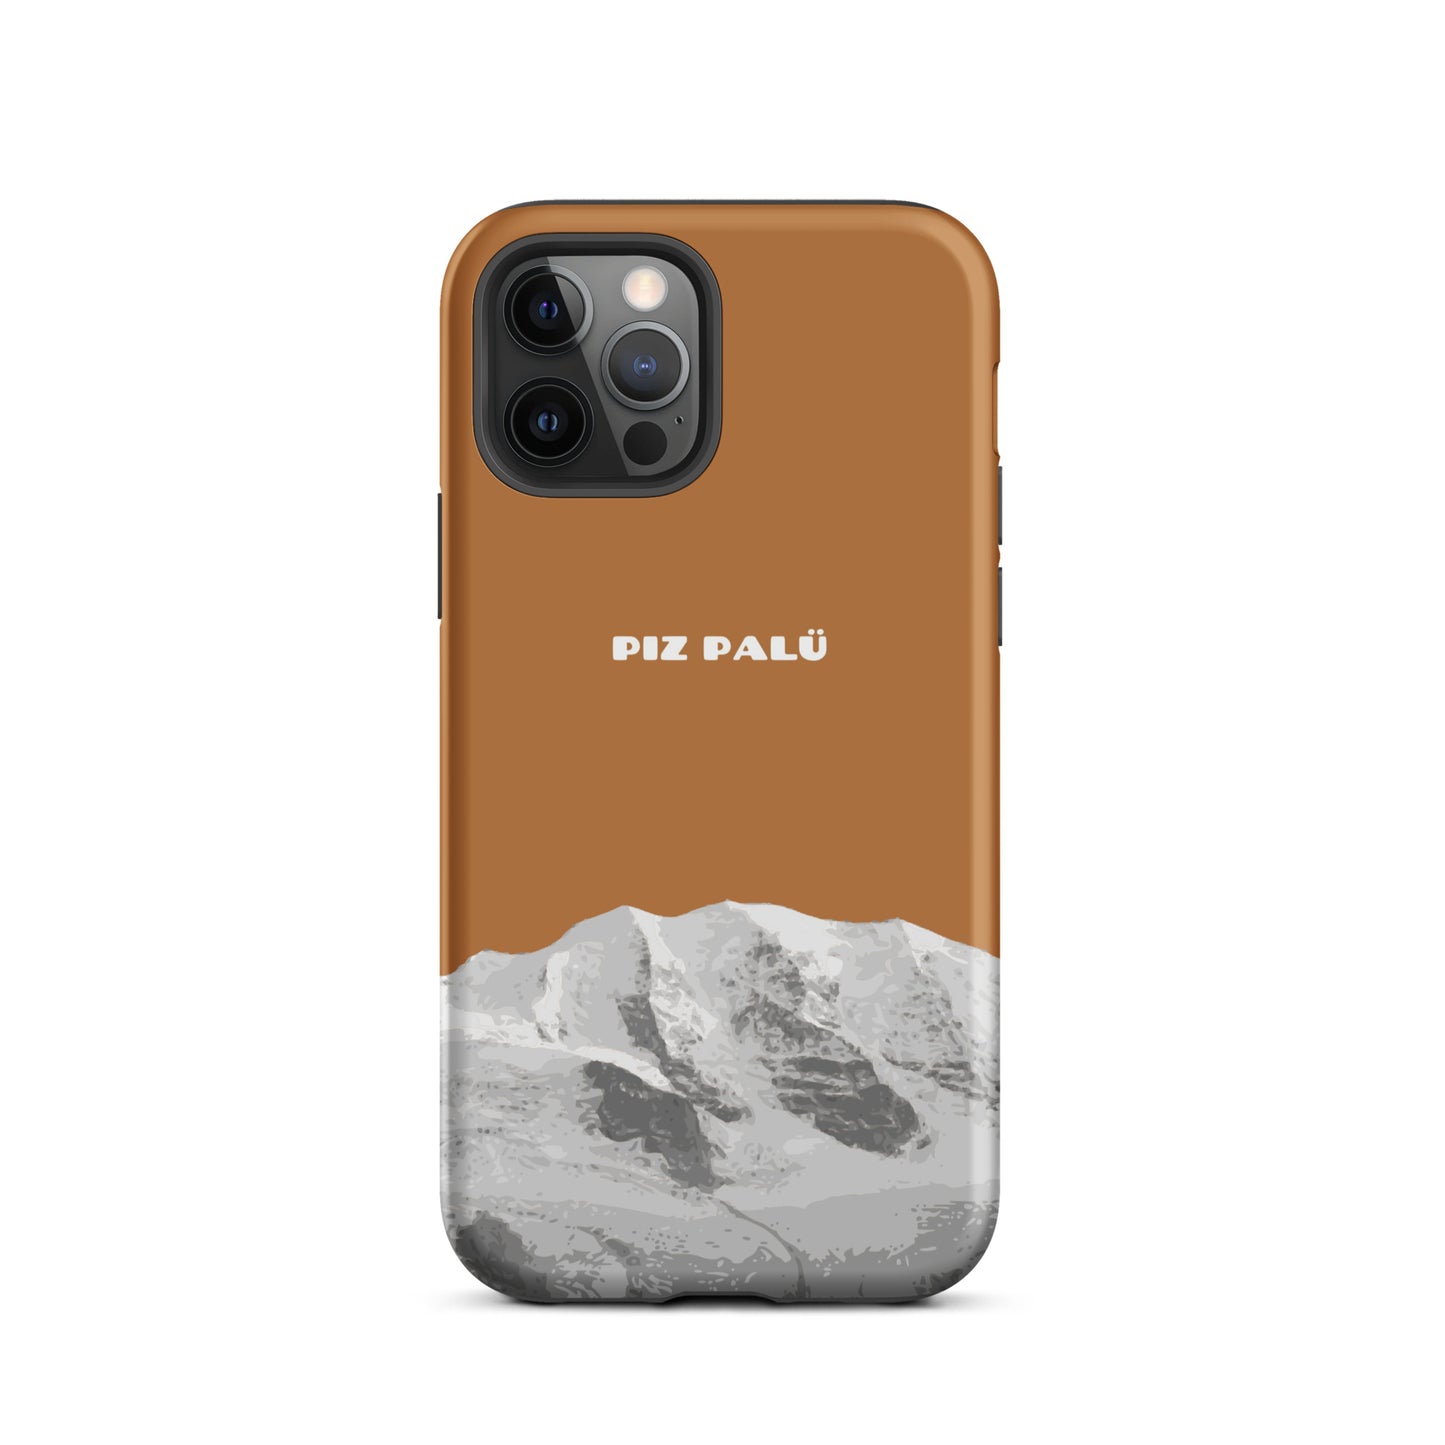 Hülle für das iPhone 12 Pro von Apple in der Farbe Kupfer, dass den Piz Palü in Graubünden zeigt.